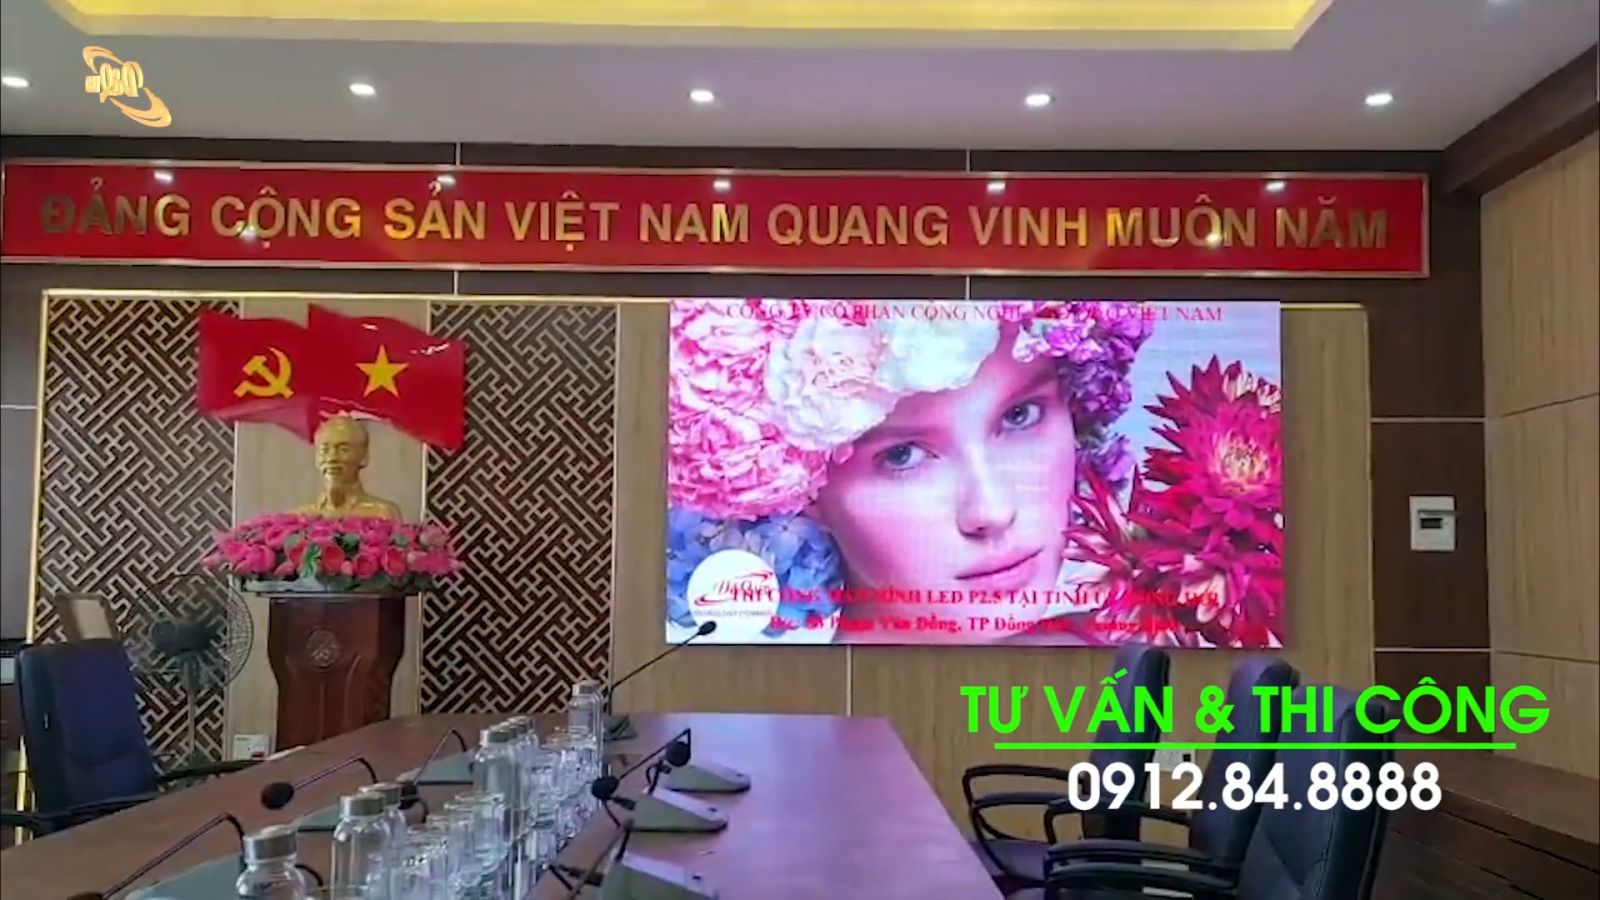 LED P2.5 Man hình được thi công tại tỉnh uy Đồng Hối - Quảng Bình.